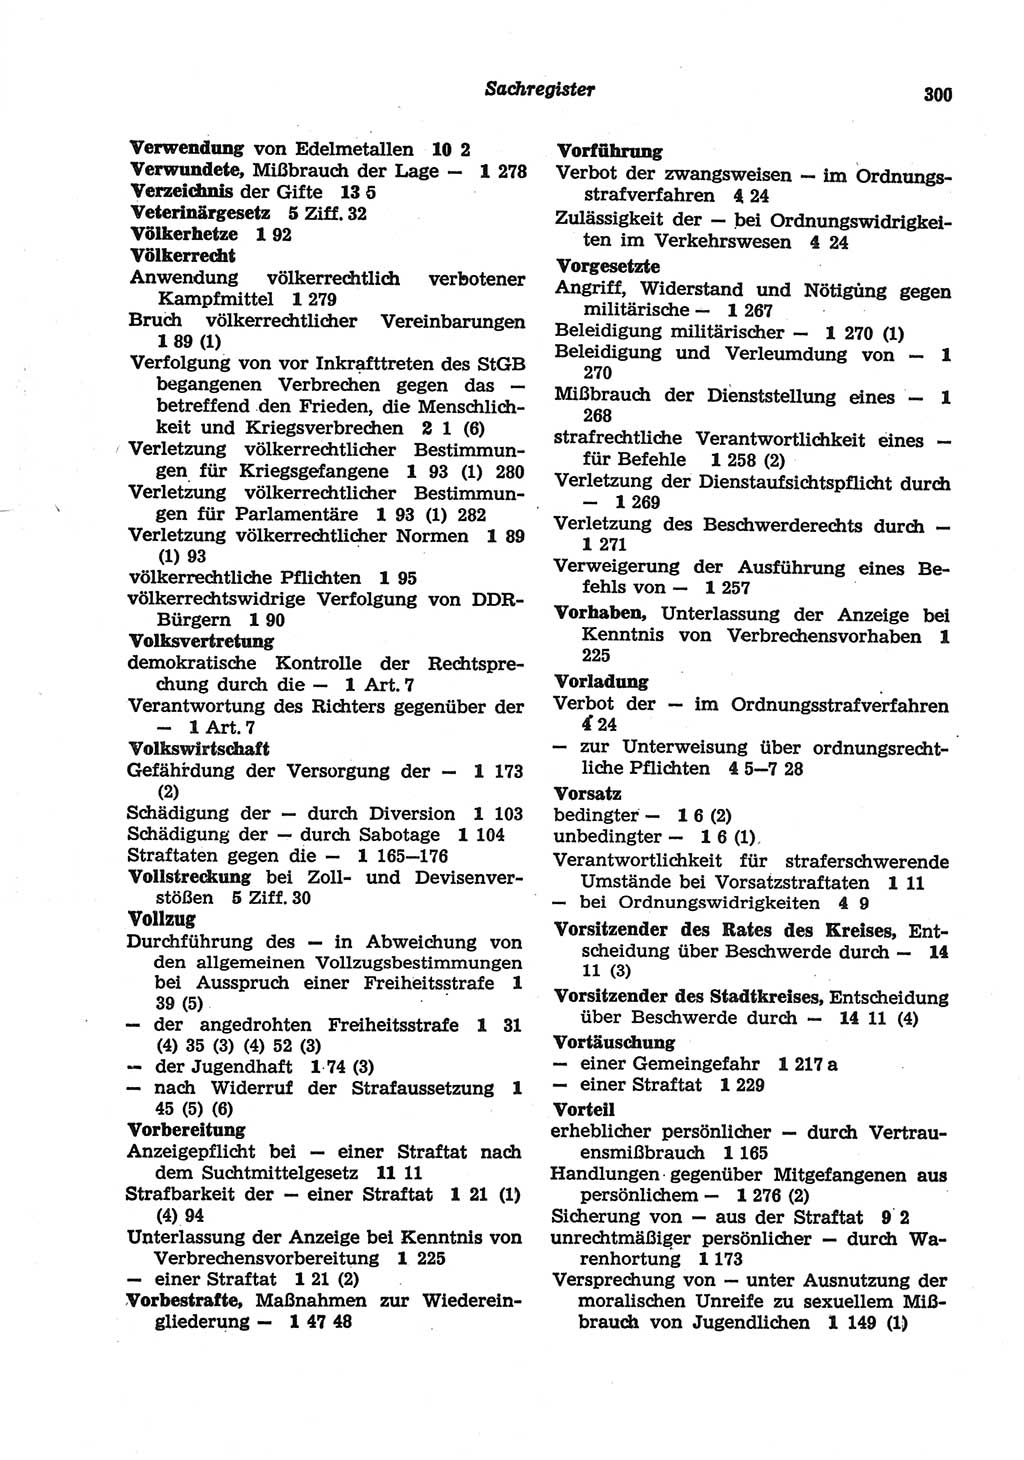 Strafgesetzbuch (StGB) der Deutschen Demokratischen Republik (DDR) und angrenzende Gesetze und Bestimmungen 1977, Seite 300 (StGB DDR Ges. Best. 1977, S. 300)